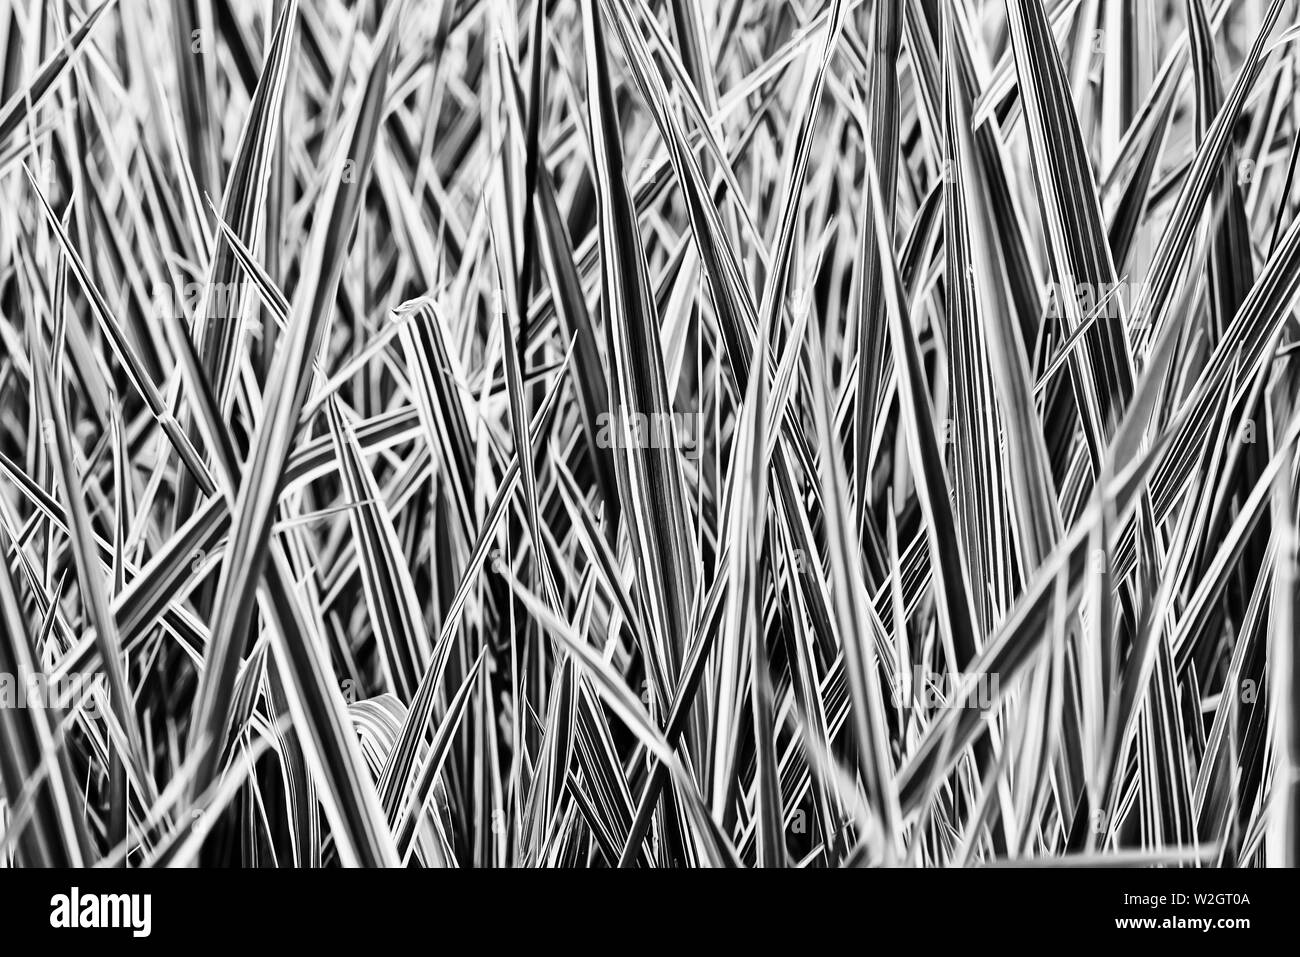 Schwarz-weiß Bild von grünen und weißen Phalaris arundinacea Blätter, auch bekannt als Schilfgras und die Gardener Strumpfbänder, wachsen in einem Park bei t Stockfoto